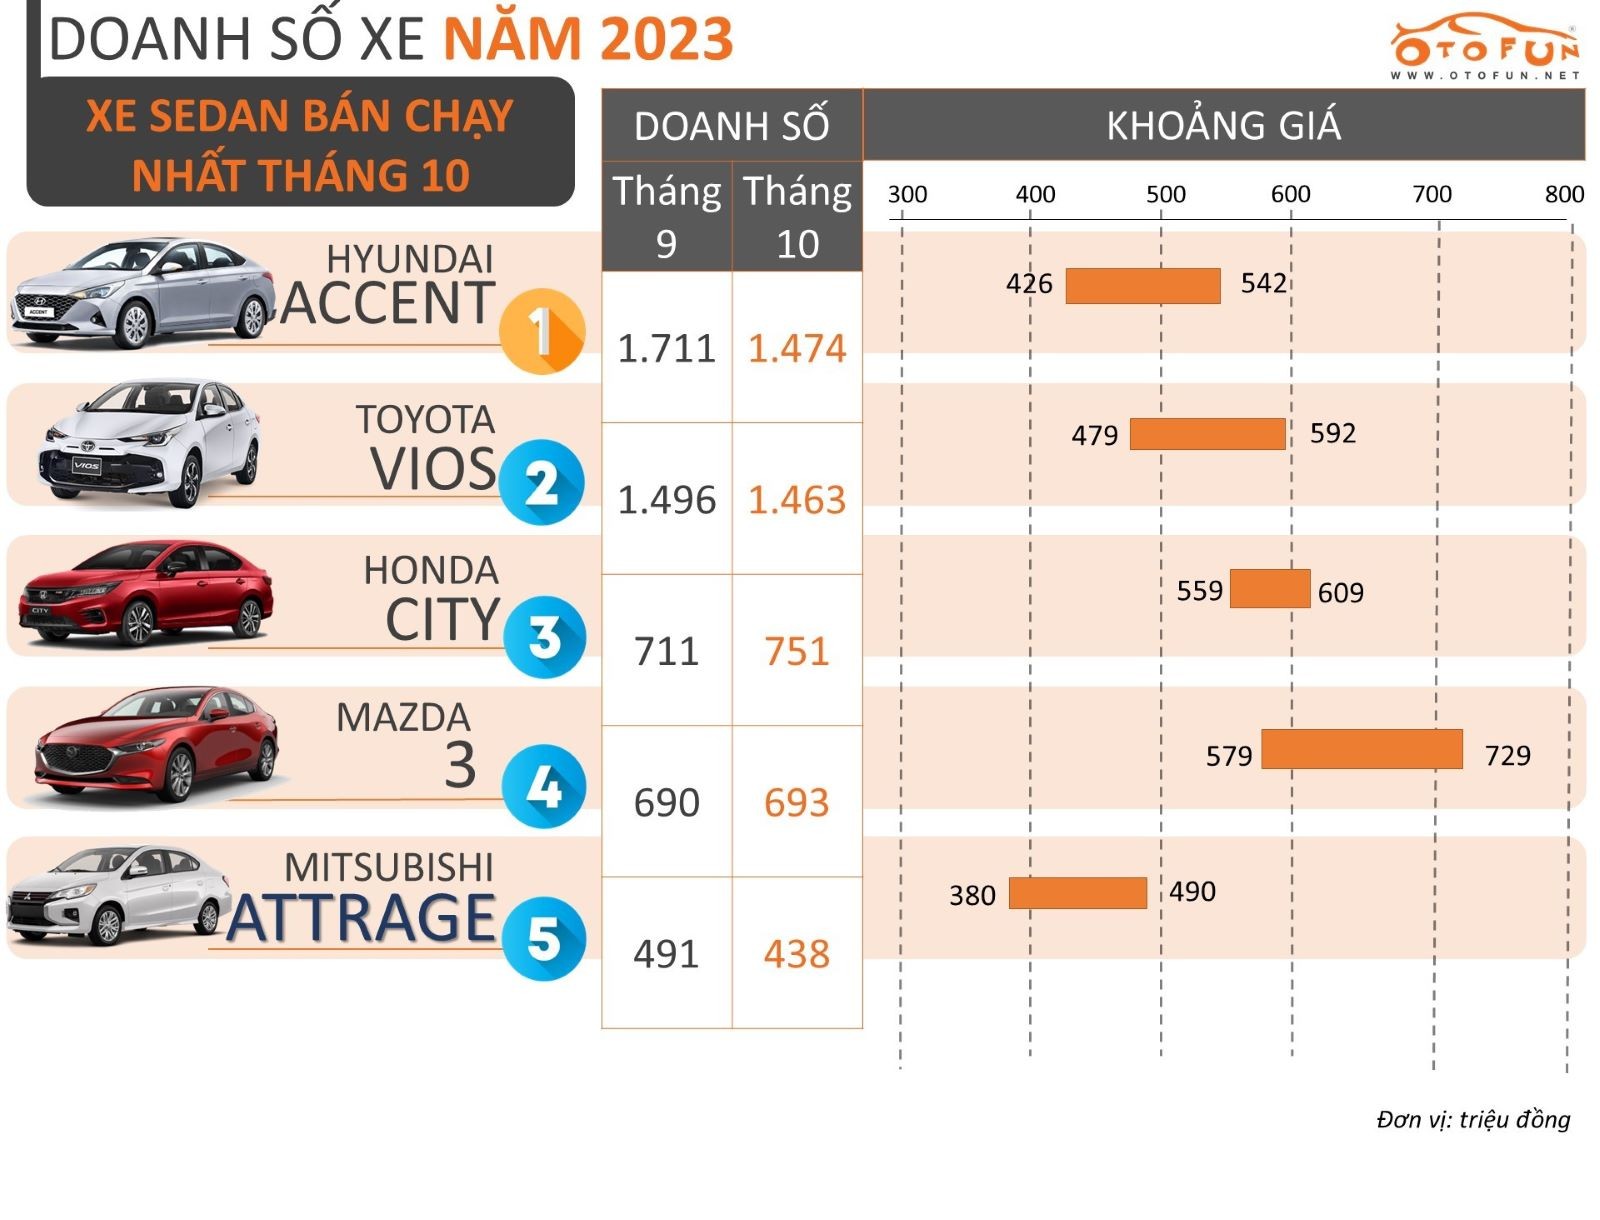 Top 5 xe sedan bán chạy nhất tháng 10/2023